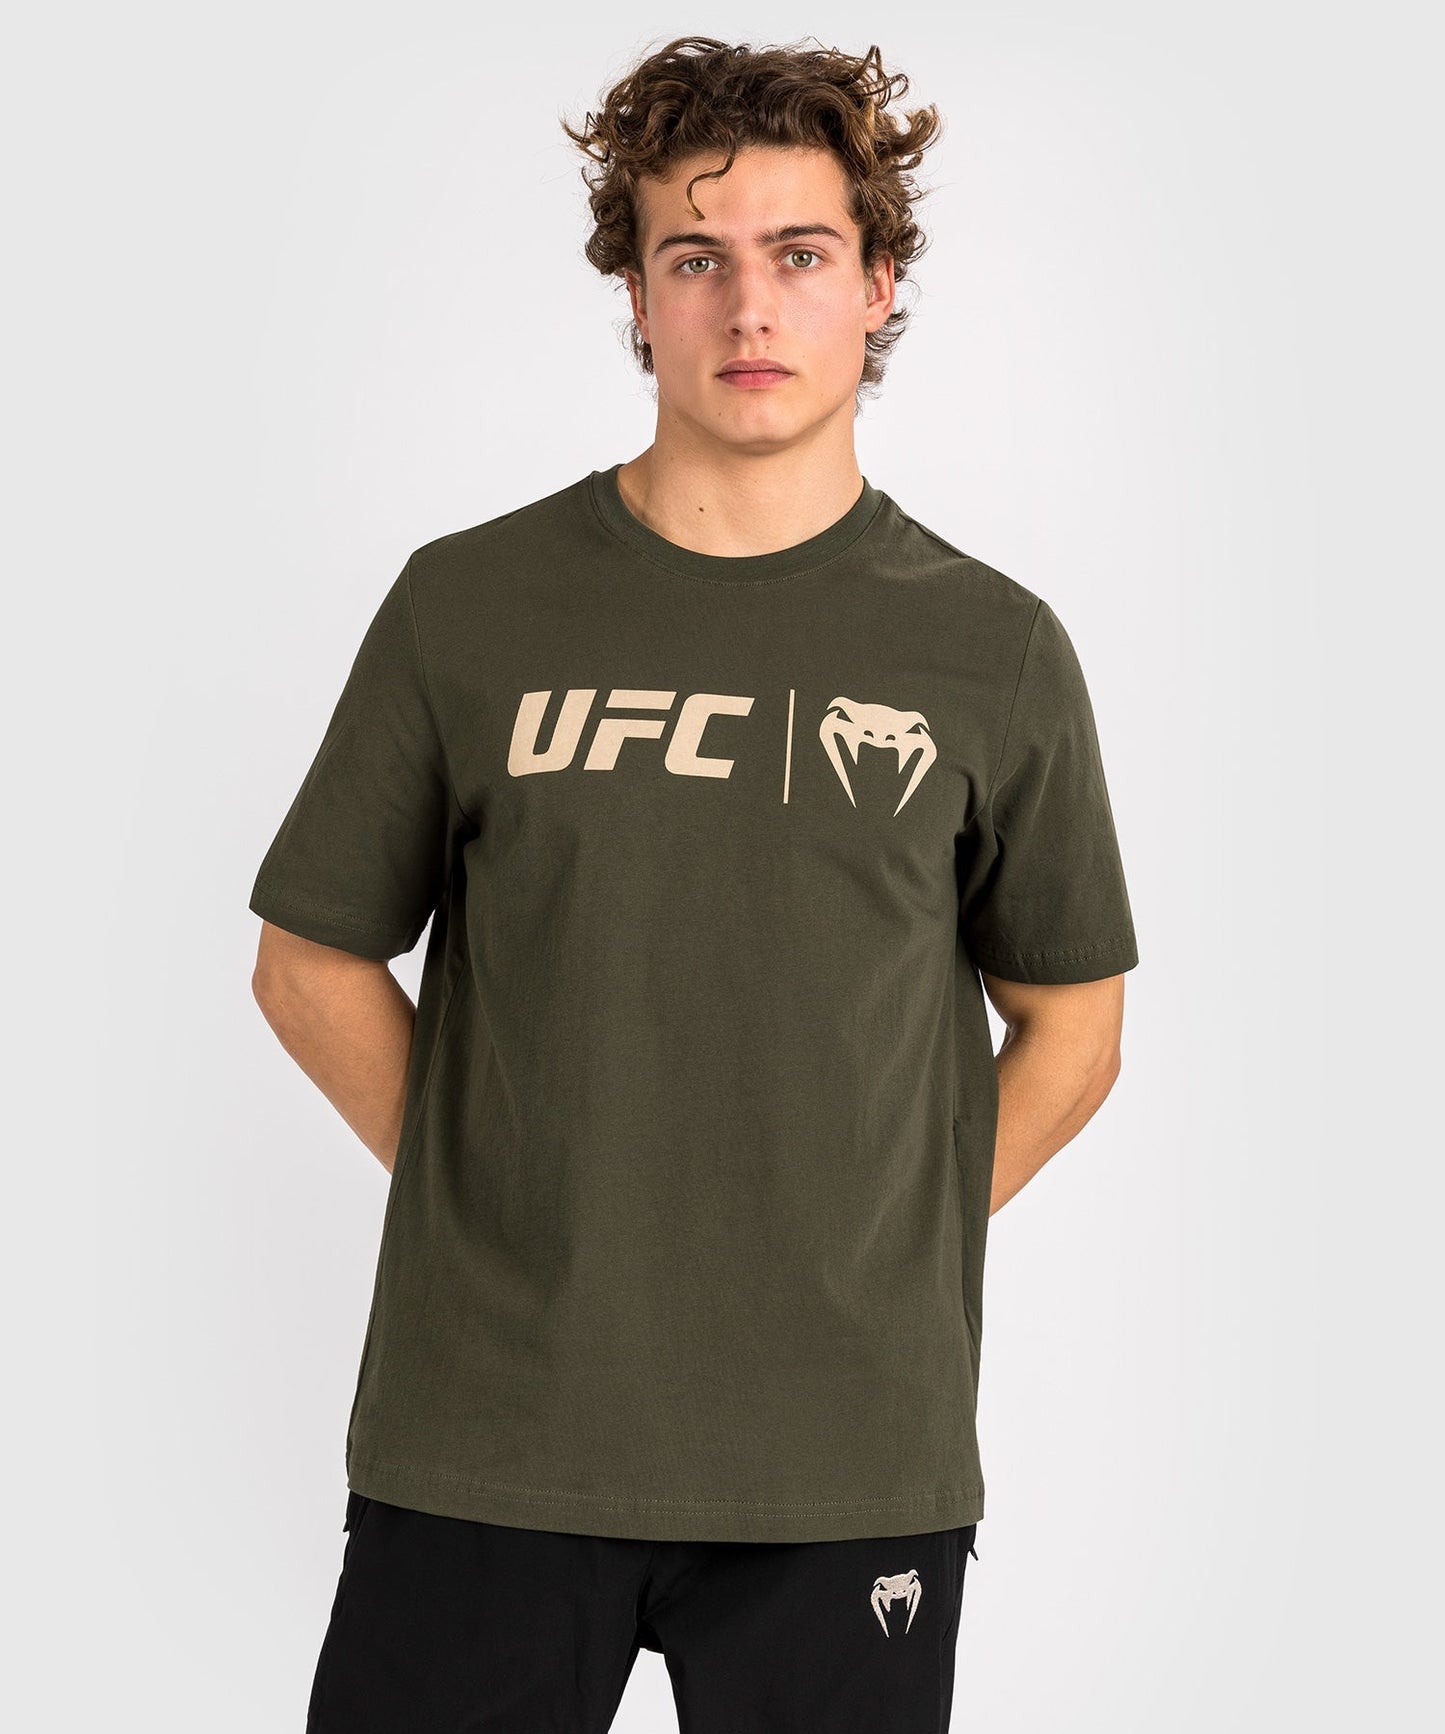 UFC Venum Classic  Camiseta - Caqui/Bronce